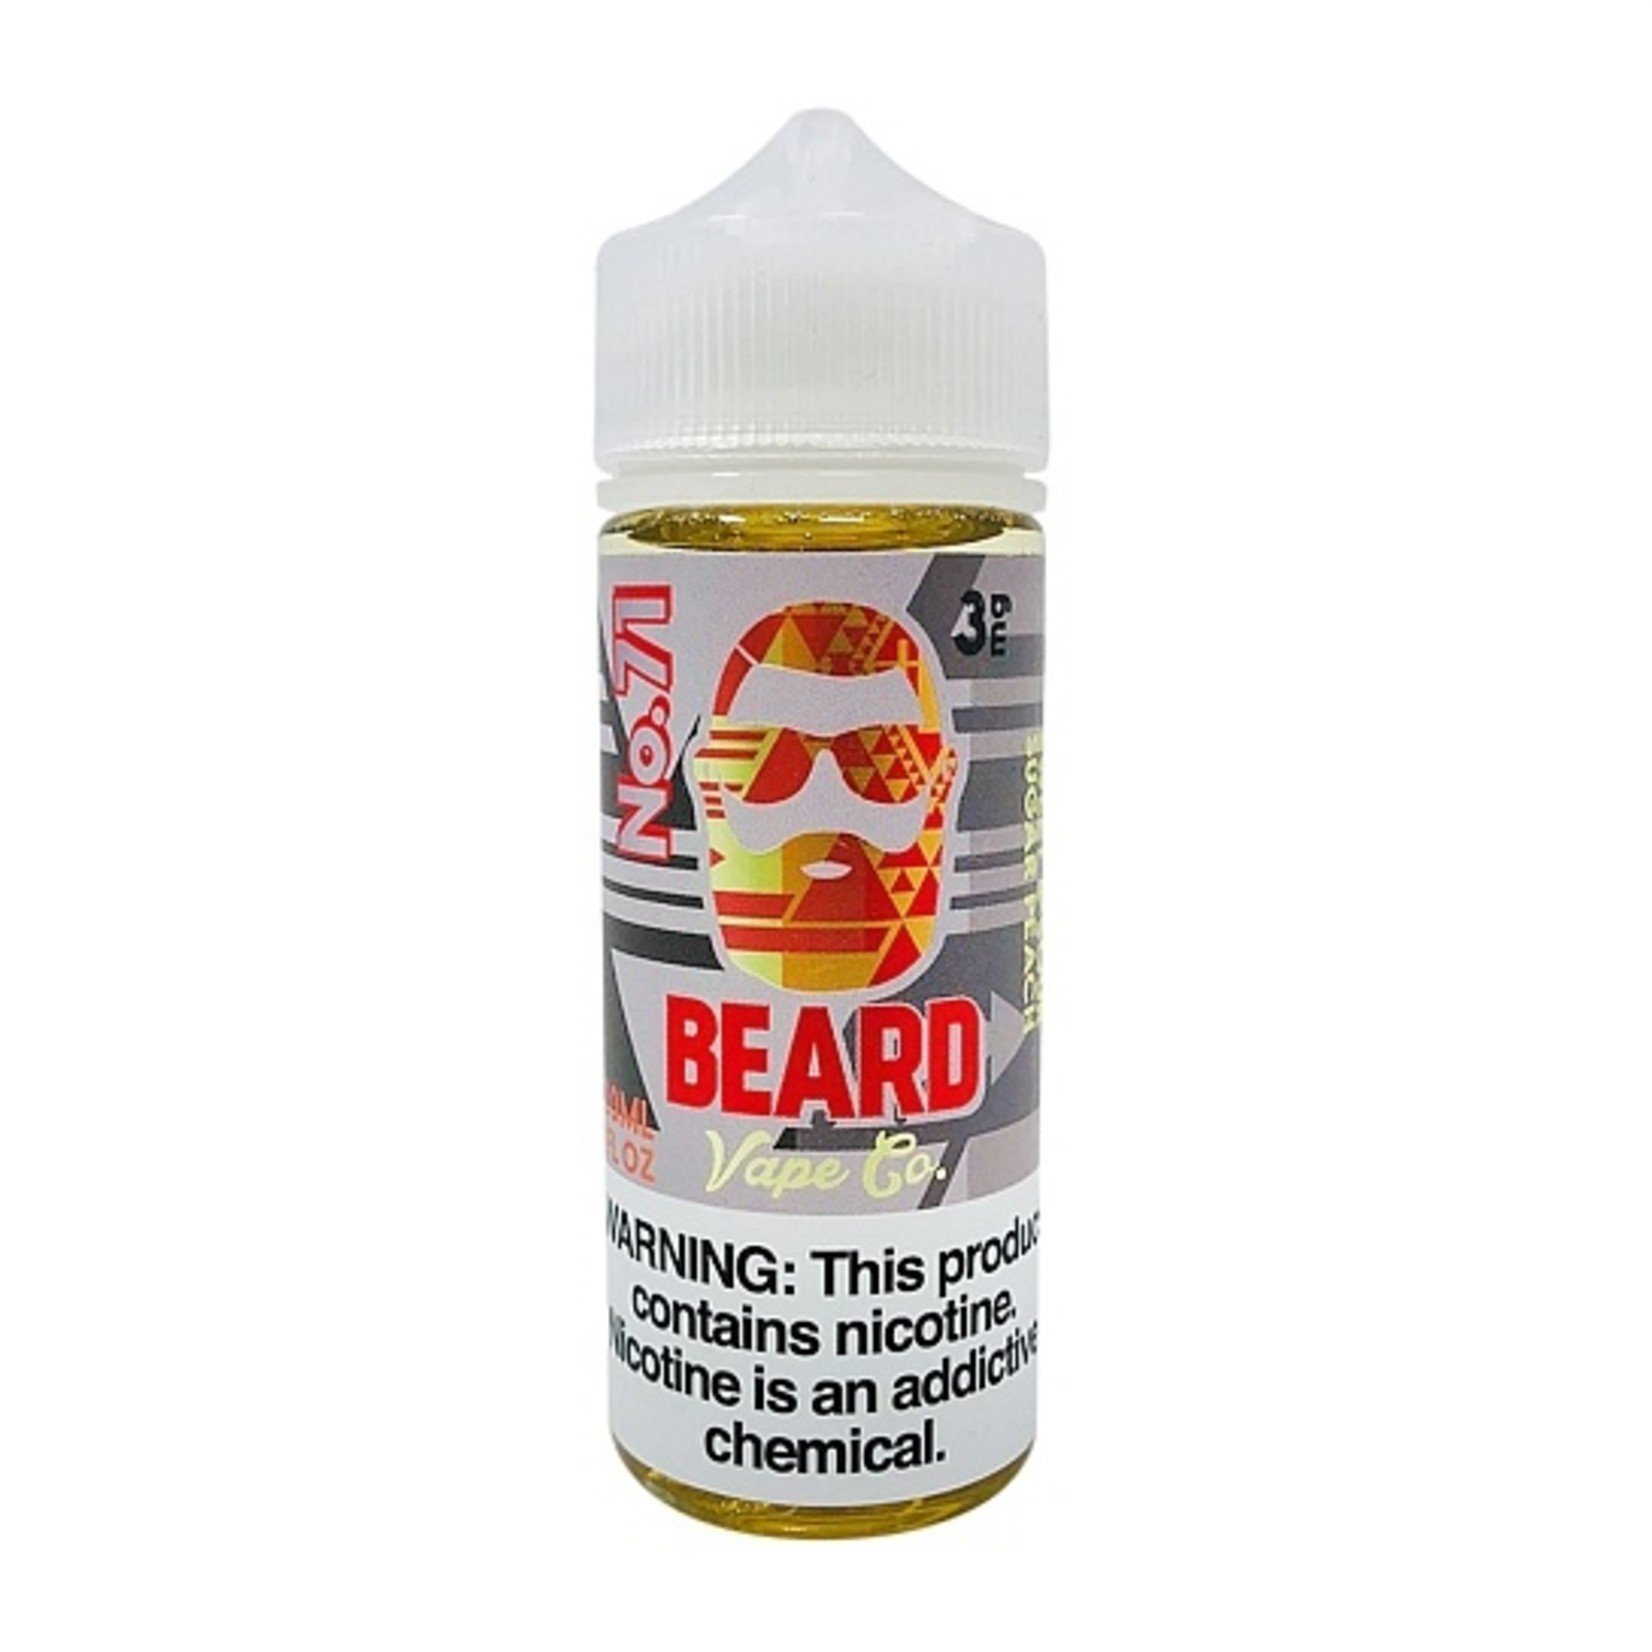 Beard Vape Co. No. 71